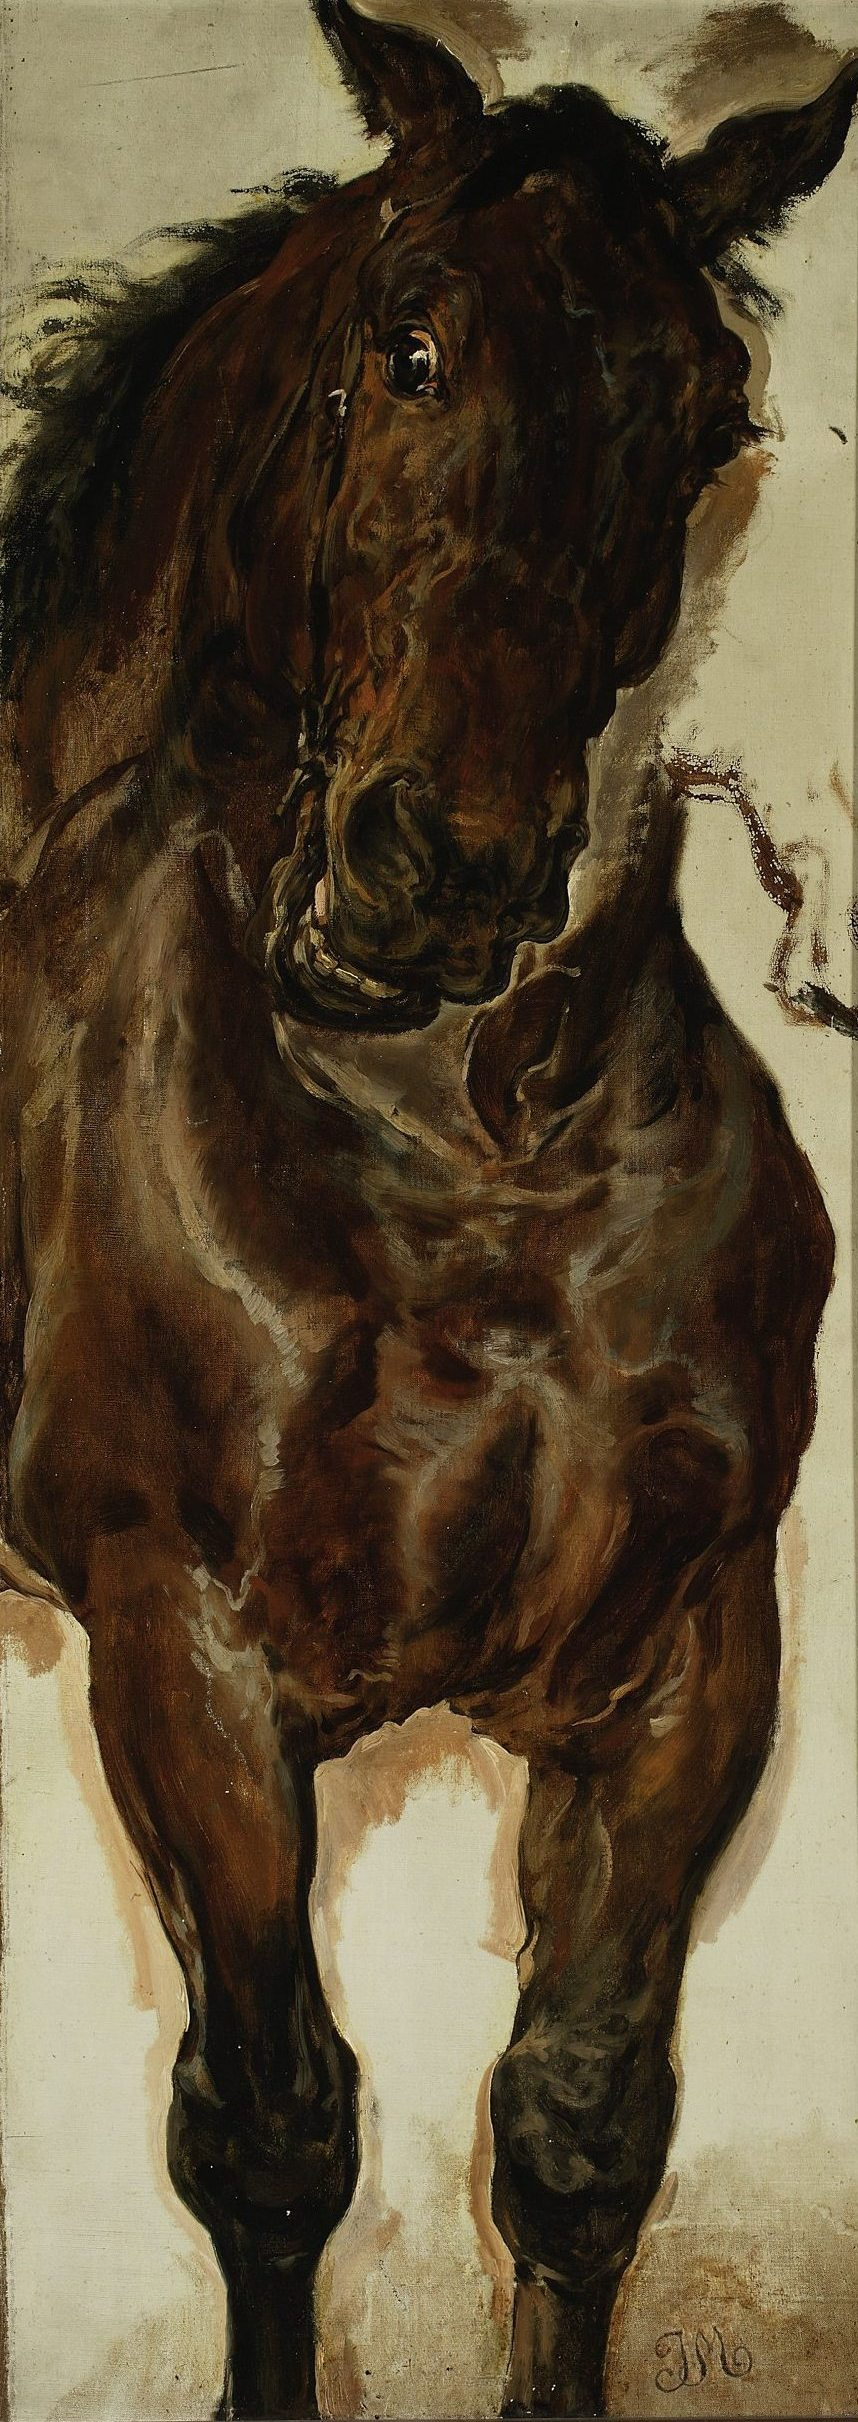 Ян Матейко. Конь Казимира. Эскиз для картины "Битва при Грюнвальде"